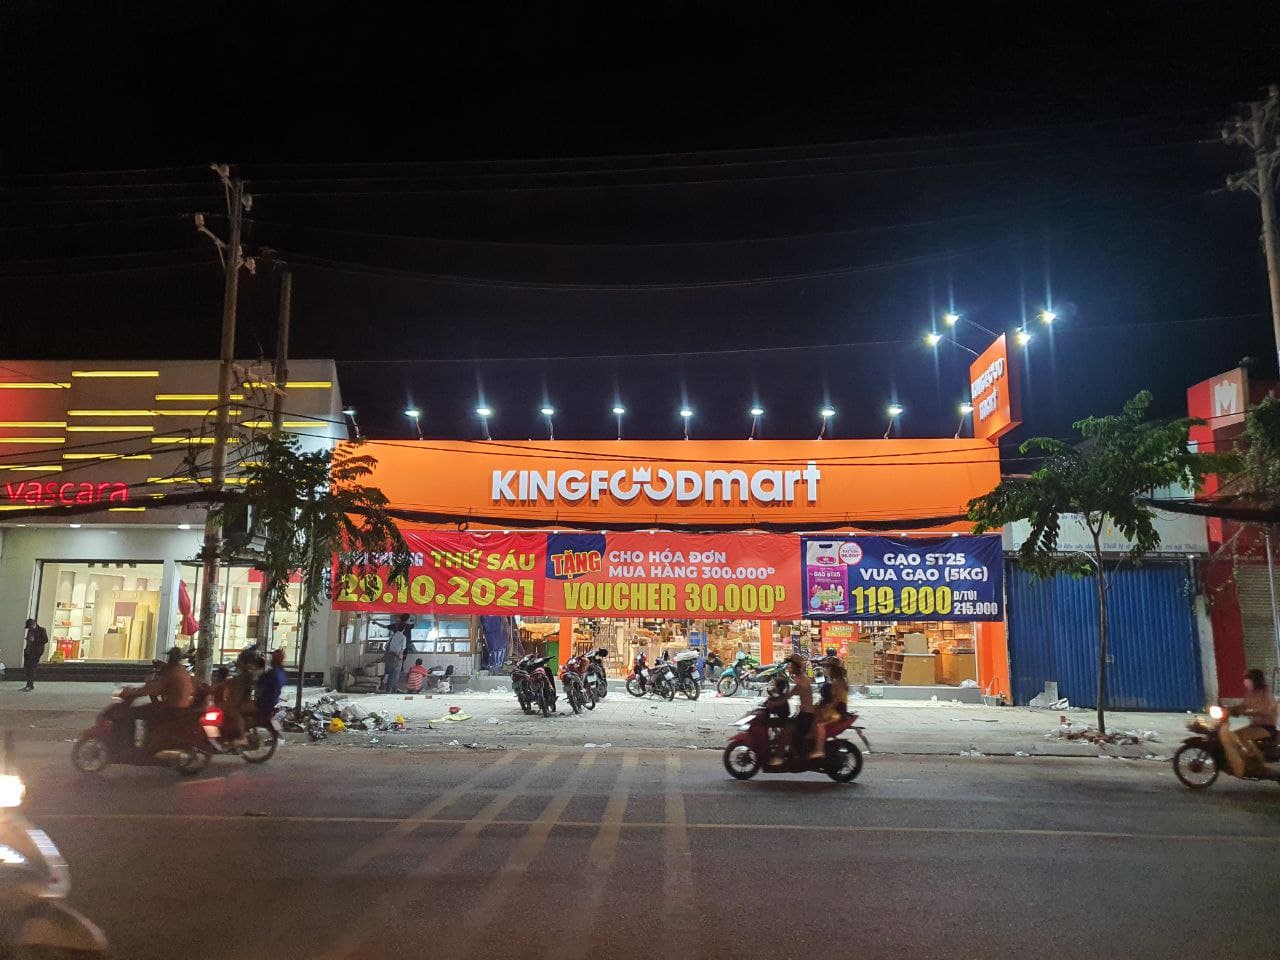 Kingfoodmart Phạm Hùng, Huyện Bình Chánh